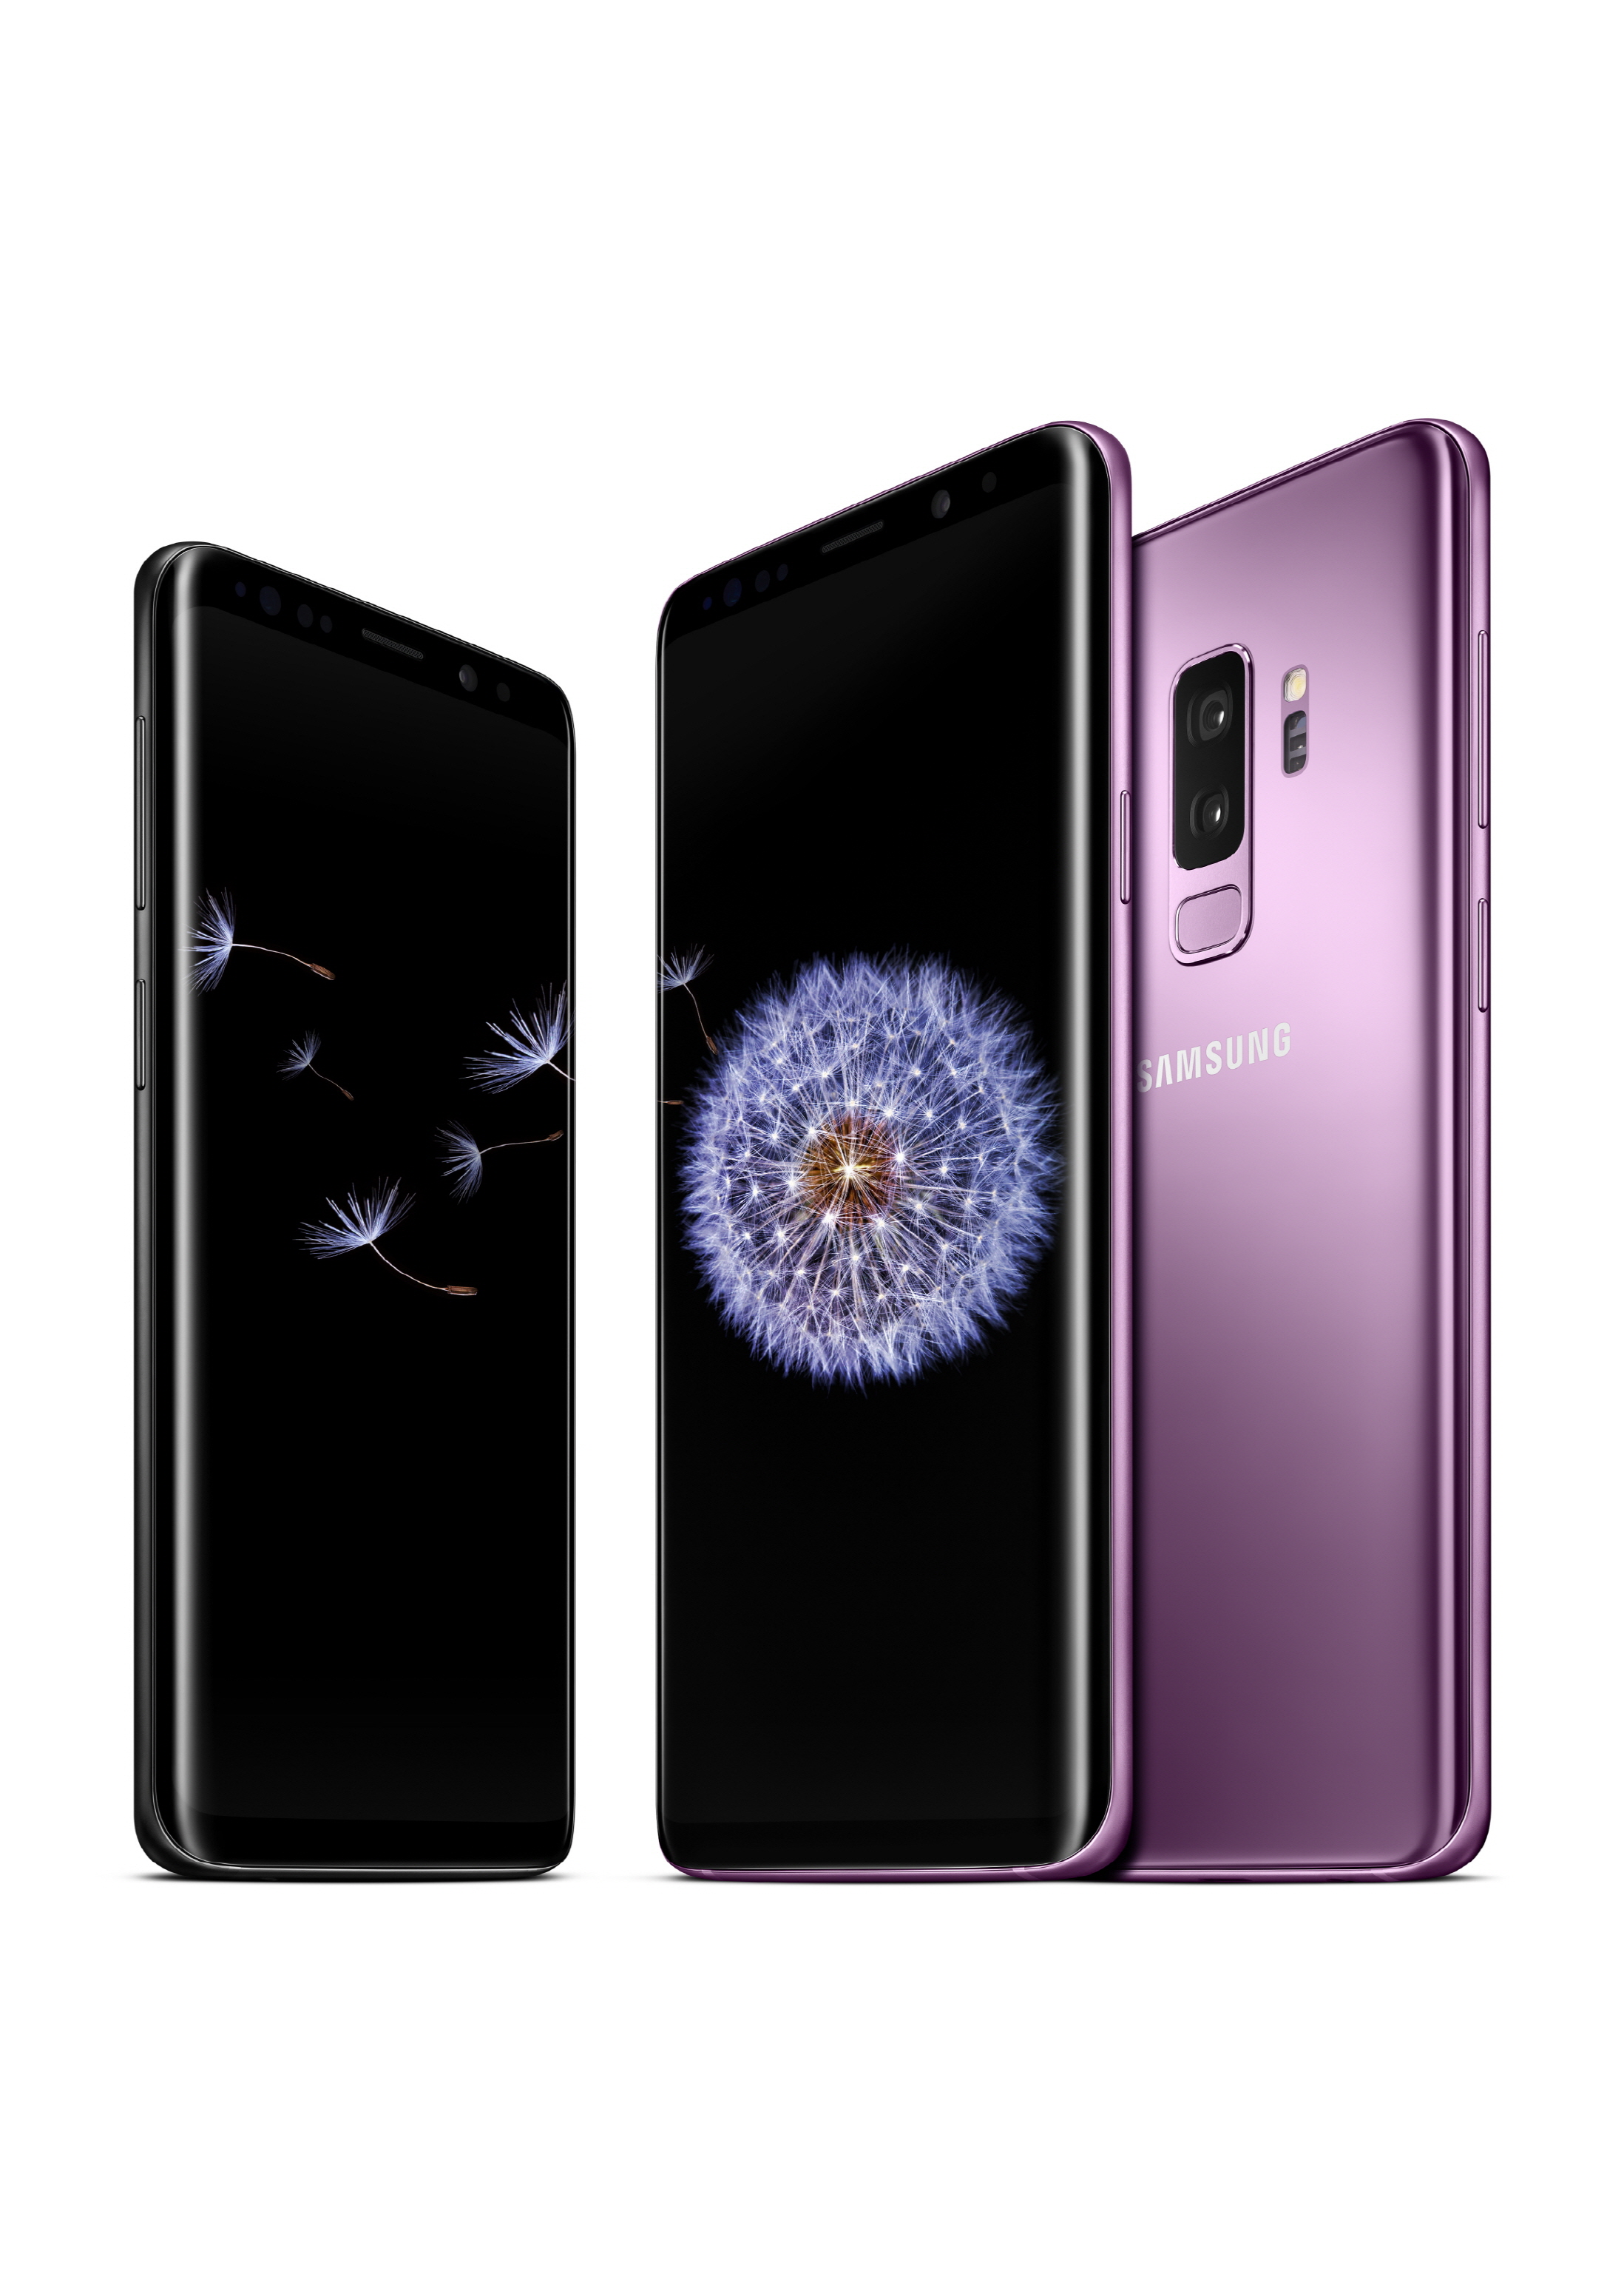 Neu bei BILDconnect: Samsung Galaxy S9 und S9+ mit LTE-Handytarif